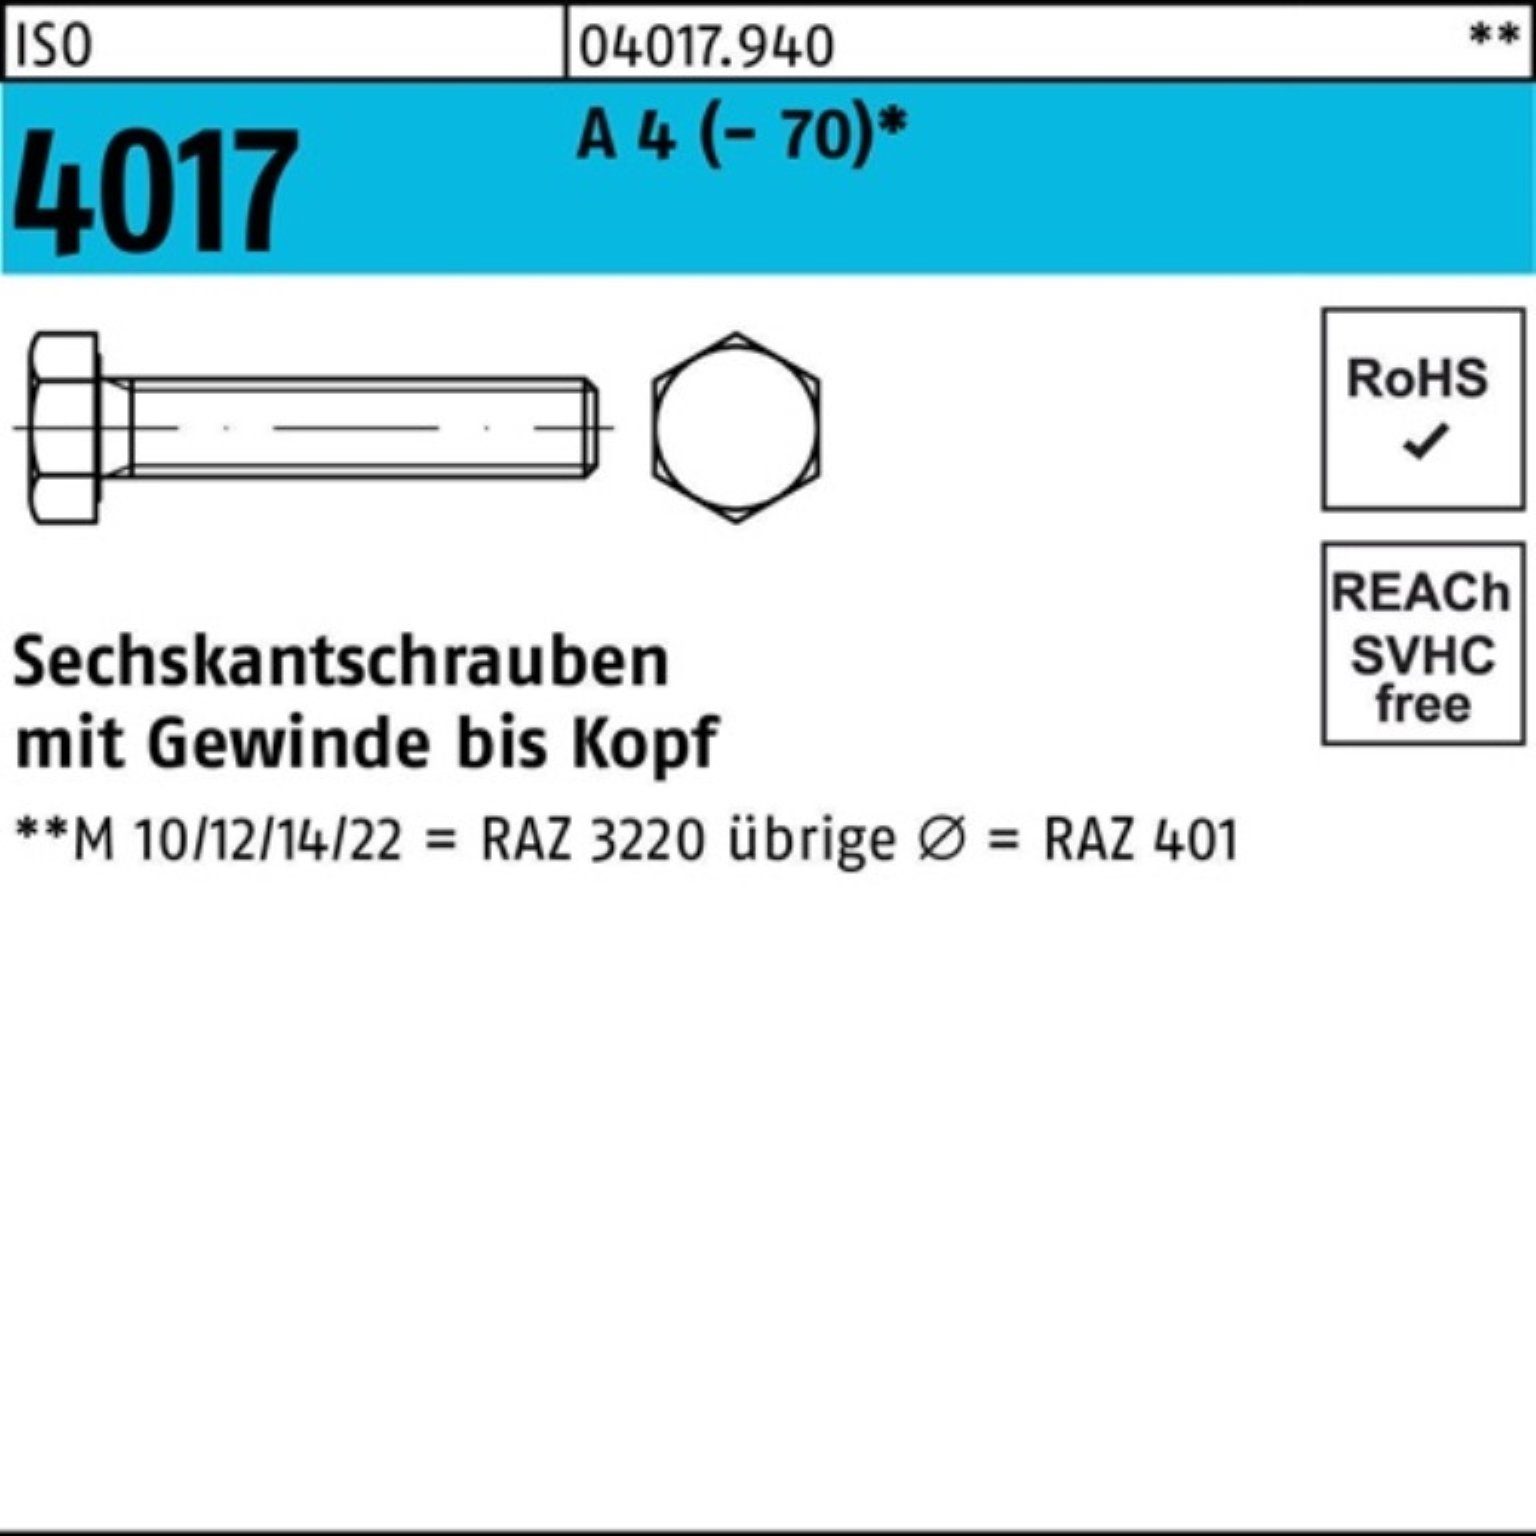 Bufab Sechskantschraube 100er Pack Sechskantschraube ISO 4017 VG M6x 90 A 4 (70) 50 Stück I